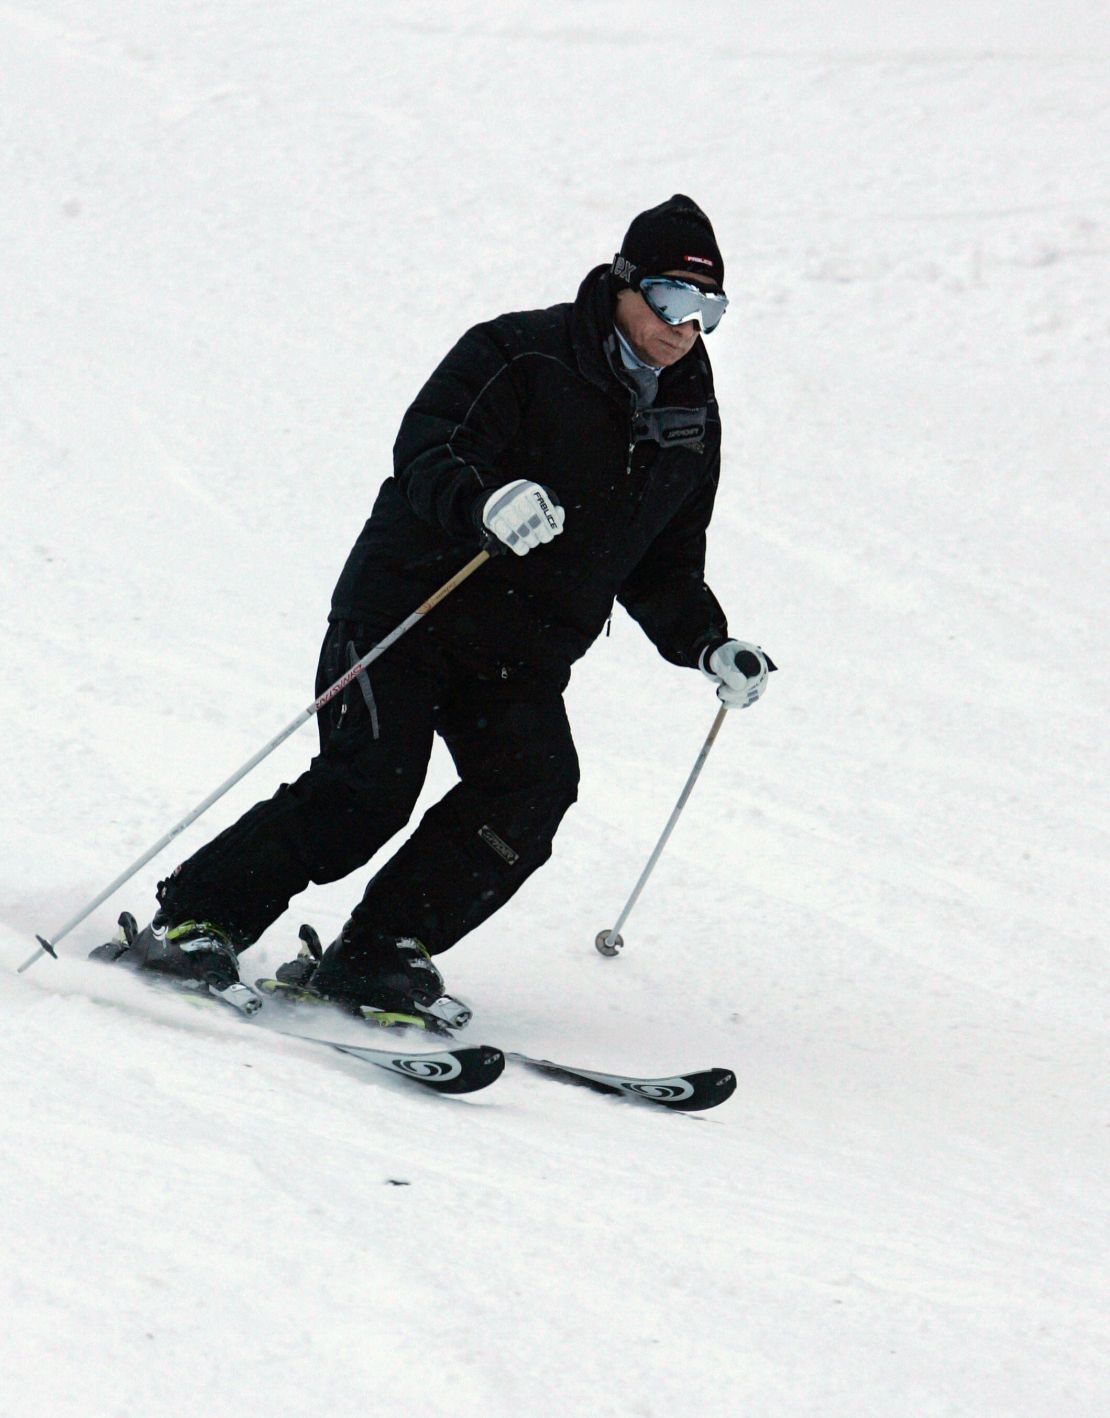 Vladimir Putin skiing